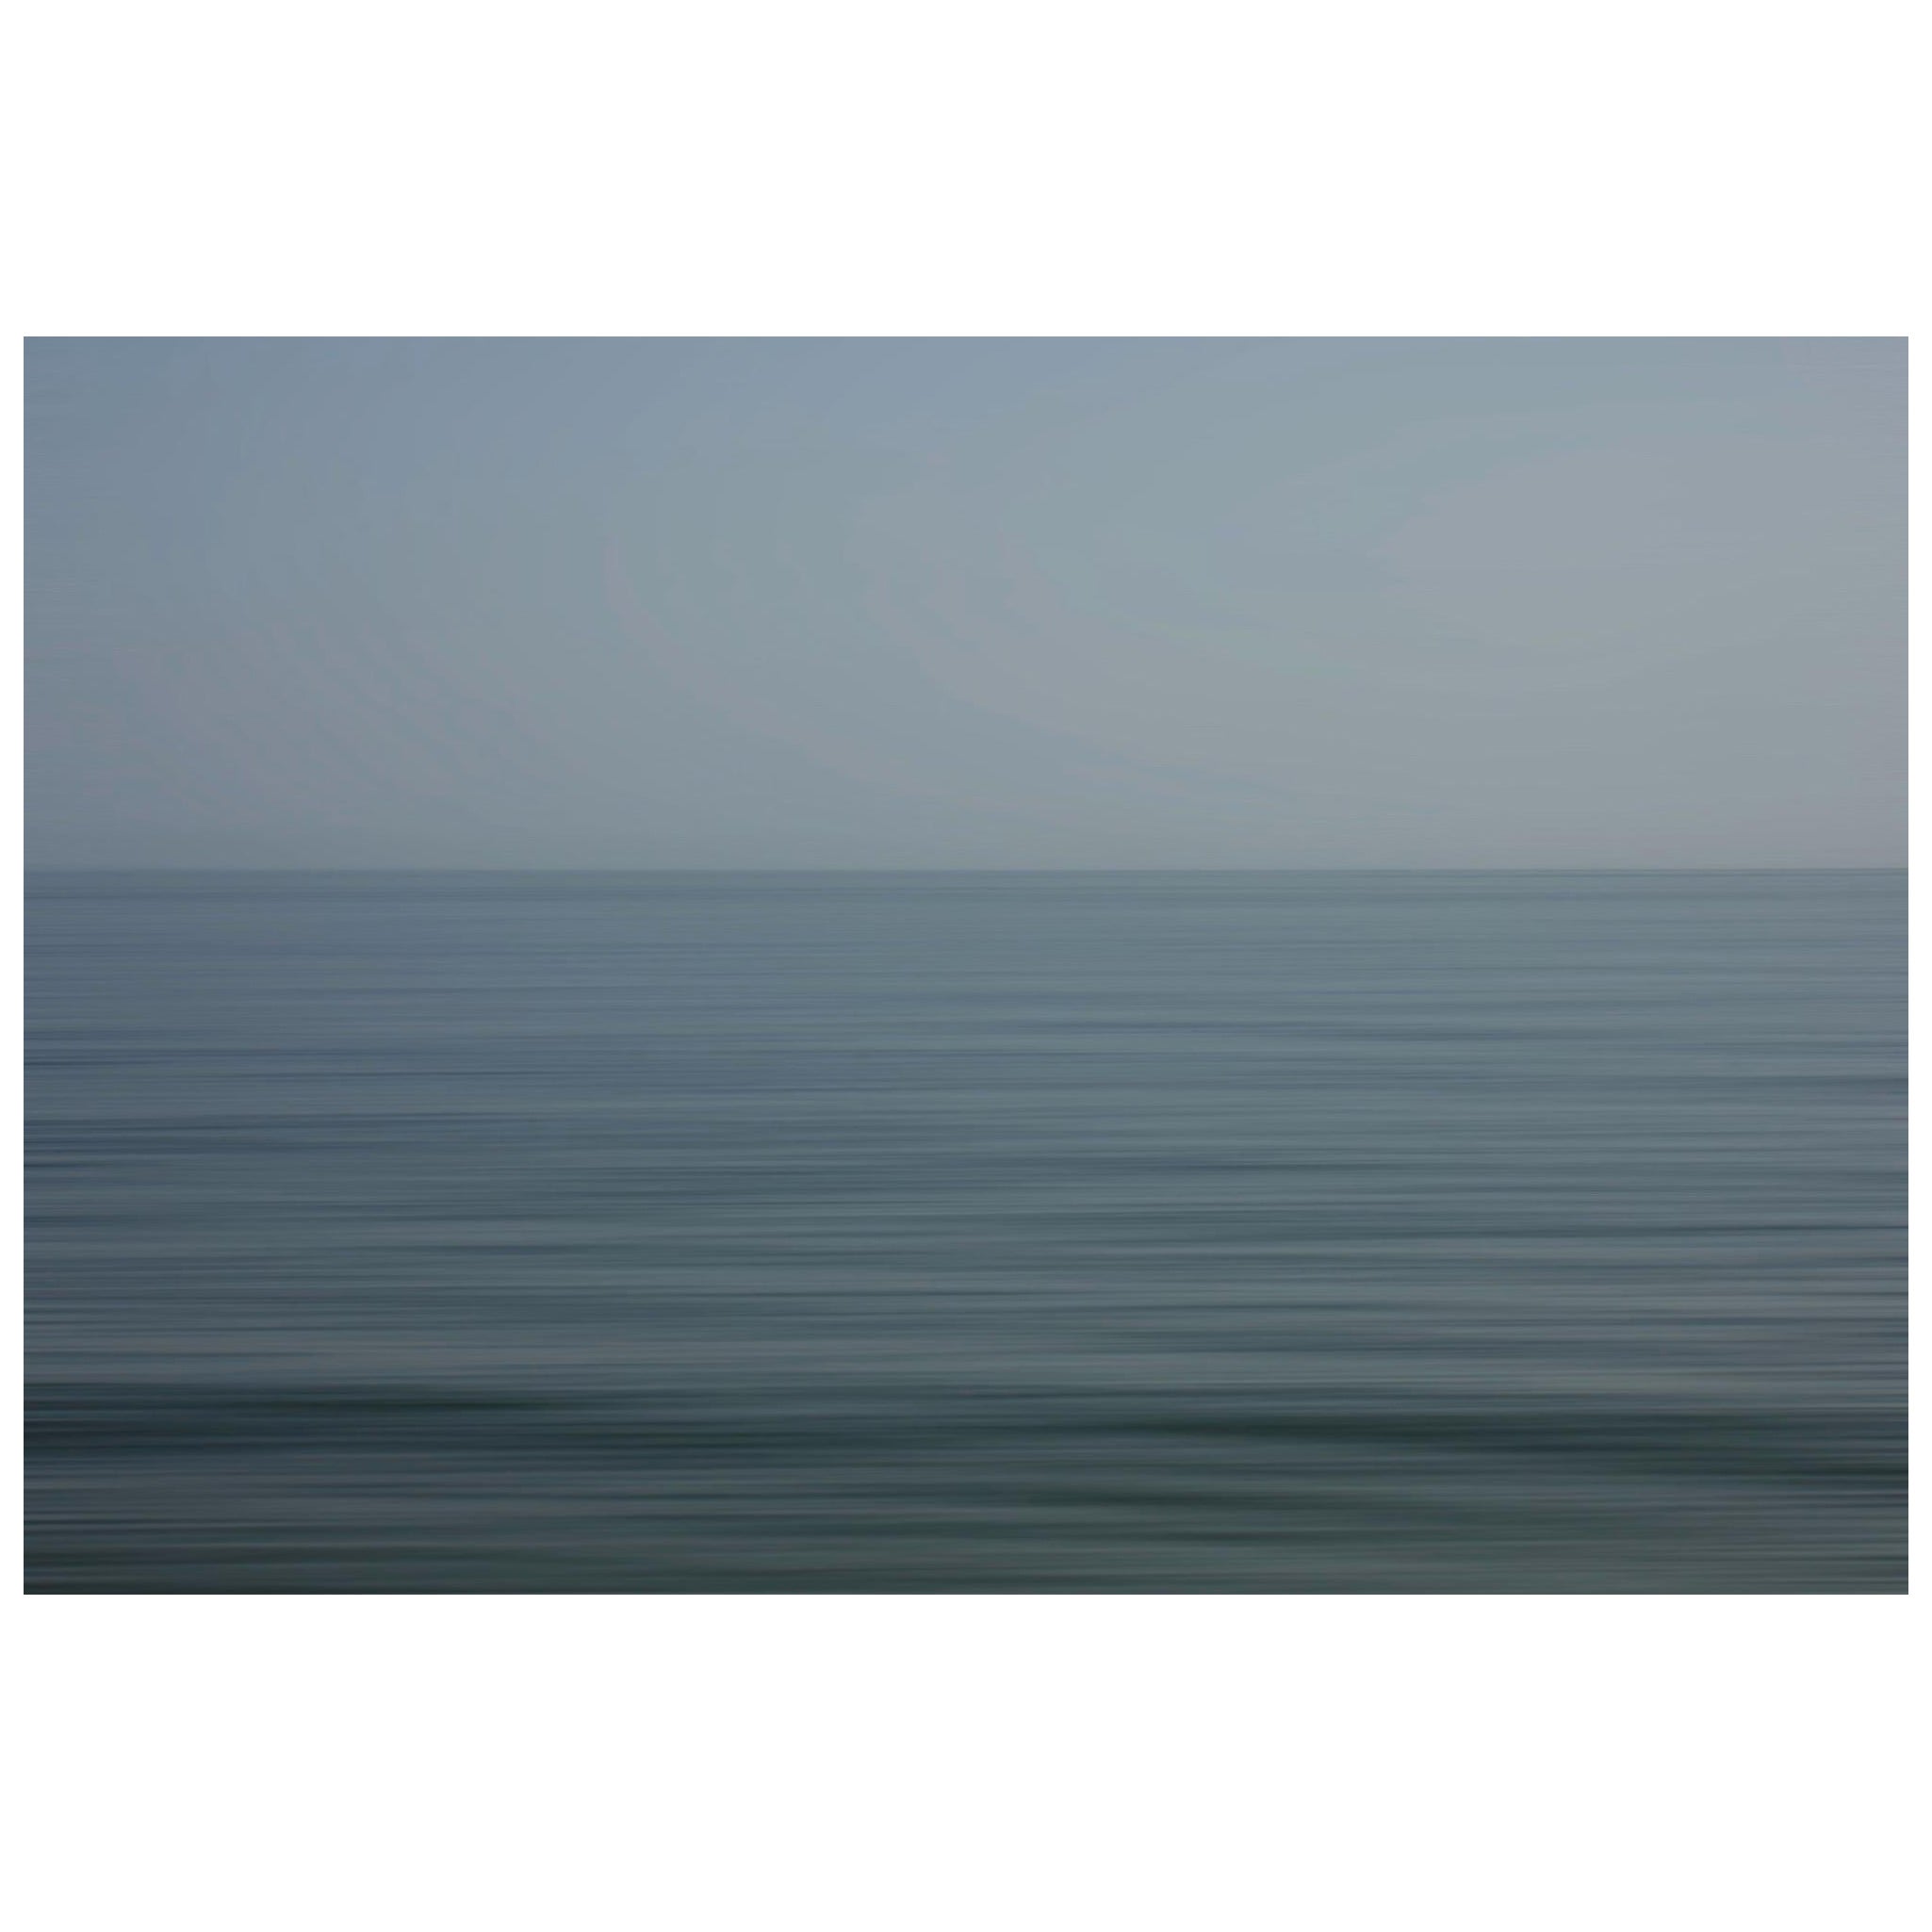 Bonnie Edelman "Algarve Blue, Portugal" Photograph, Scapes Series, 2021